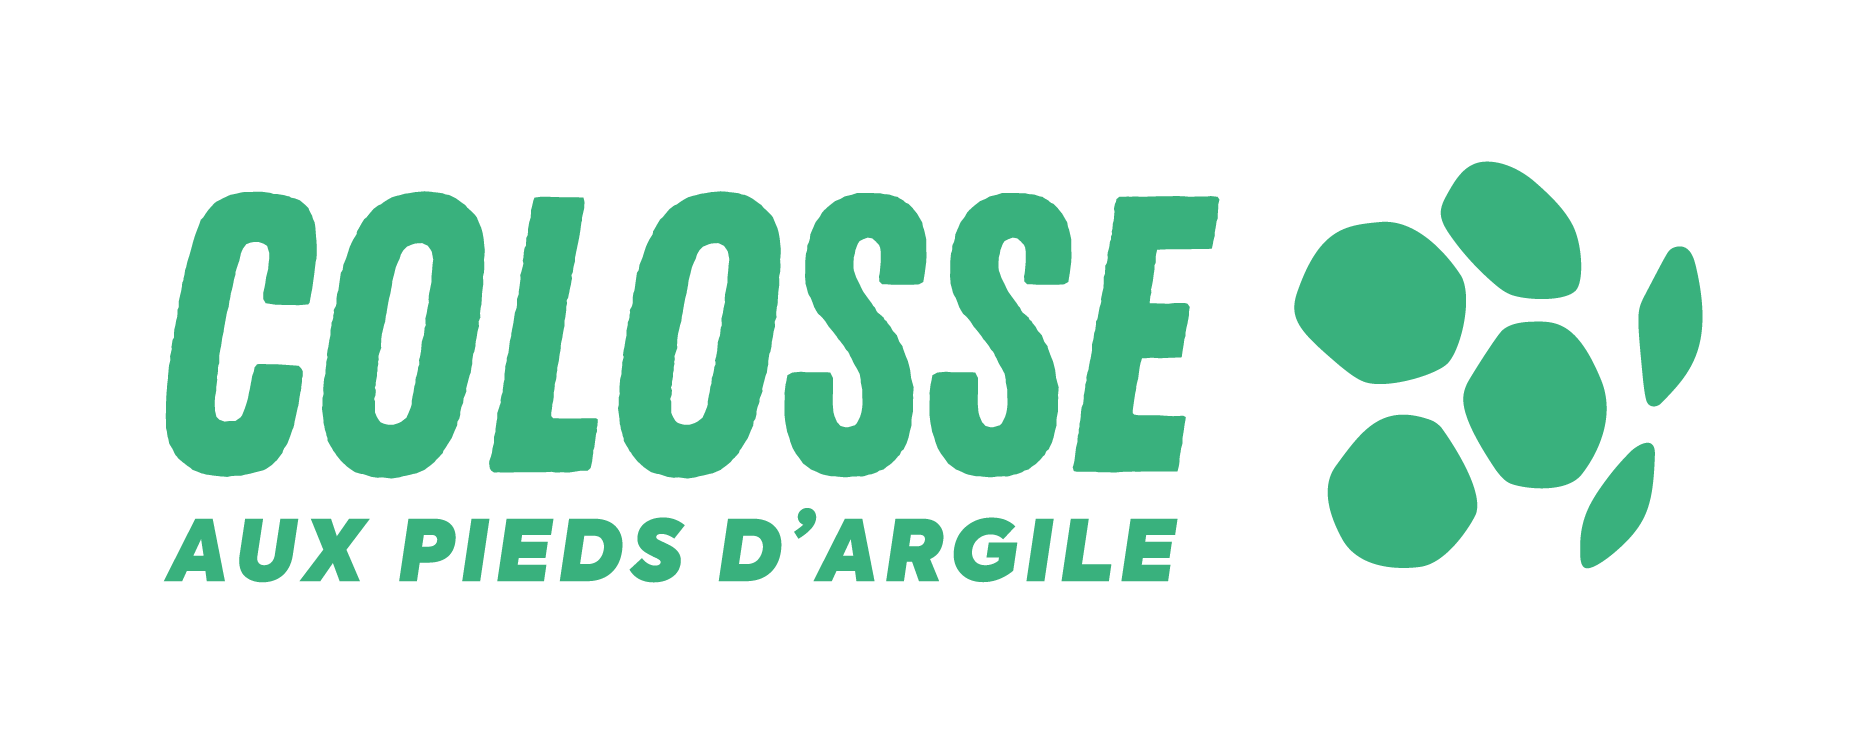 Logo Colosse aux Pieds d'Argile